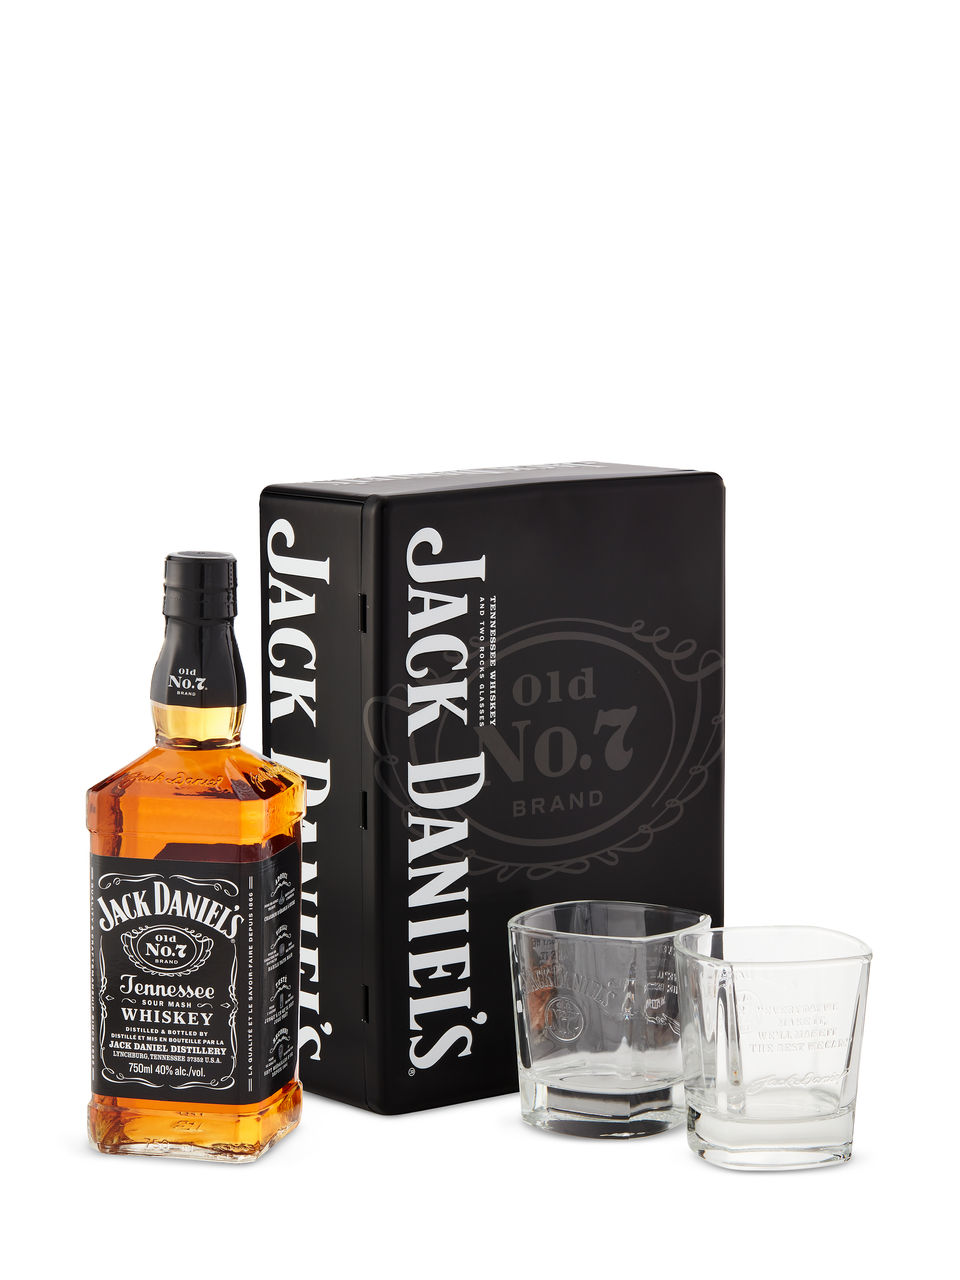 Whiskey du Tennessee Jack Daniel's dans un coffret métallique avec 2 verres